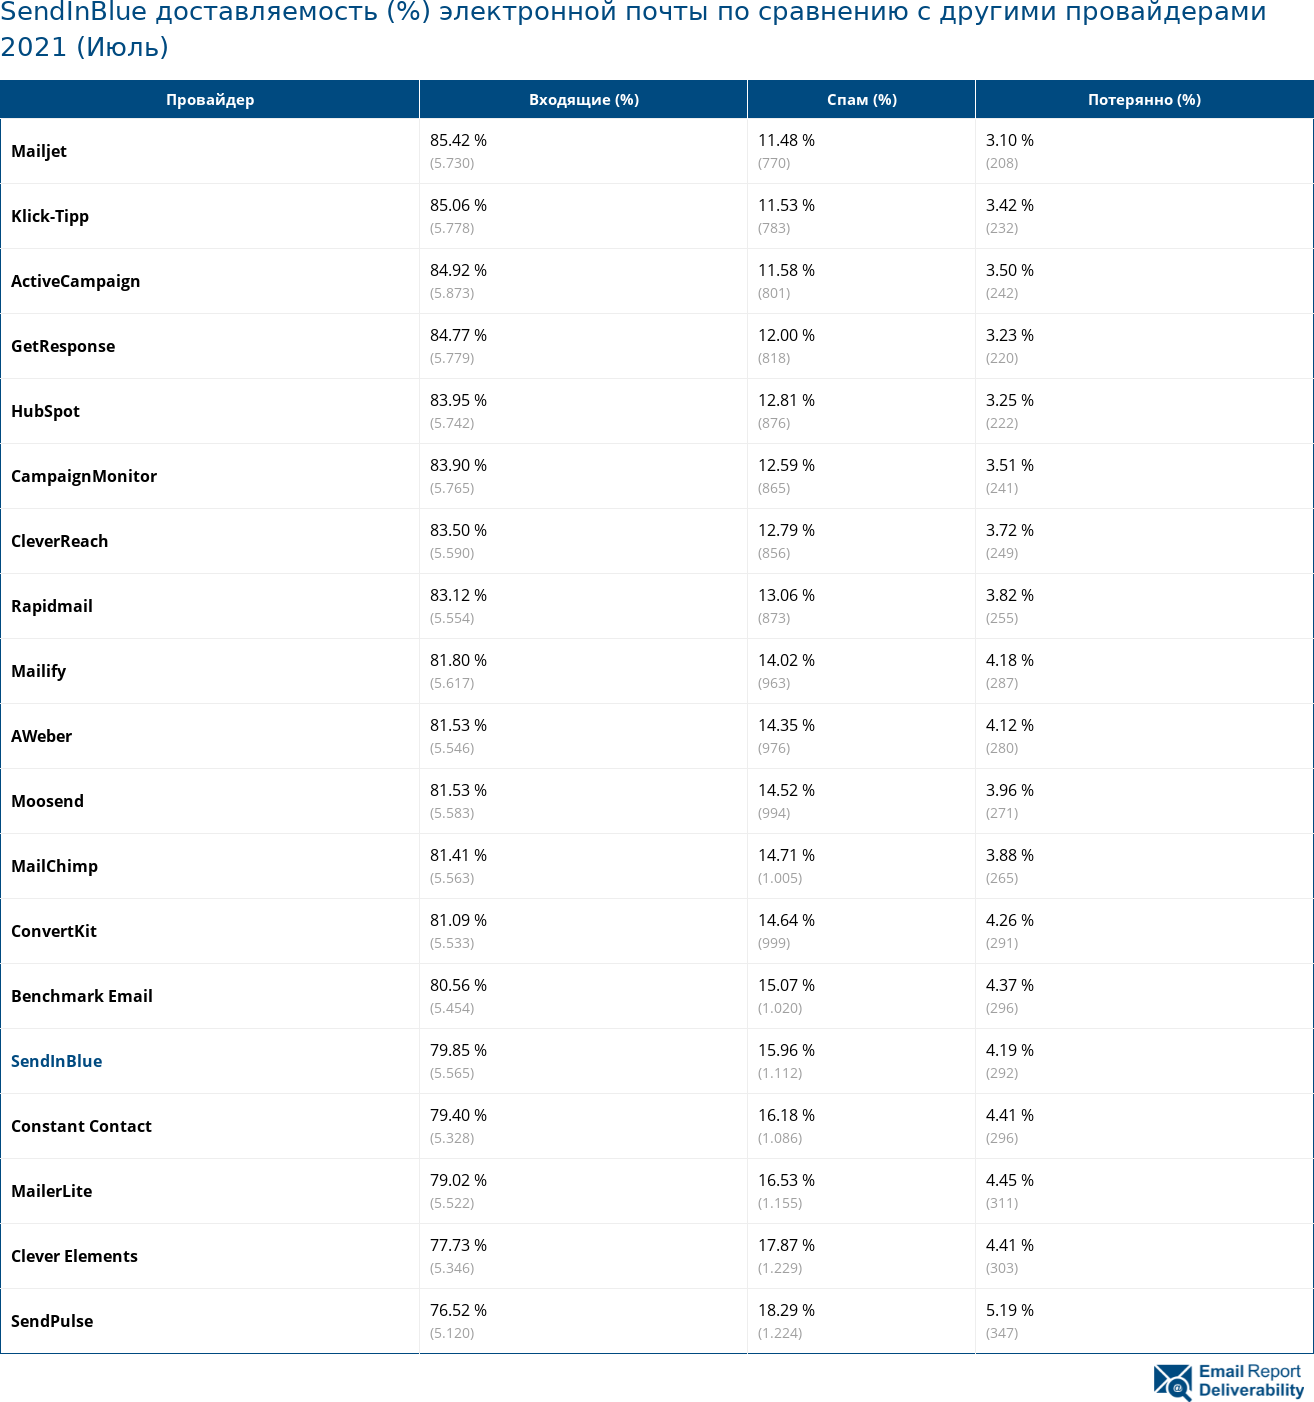 SendInBlue доставляемость (%) электронной почты по сравнению с другими провайдерами 2021 (Июль)